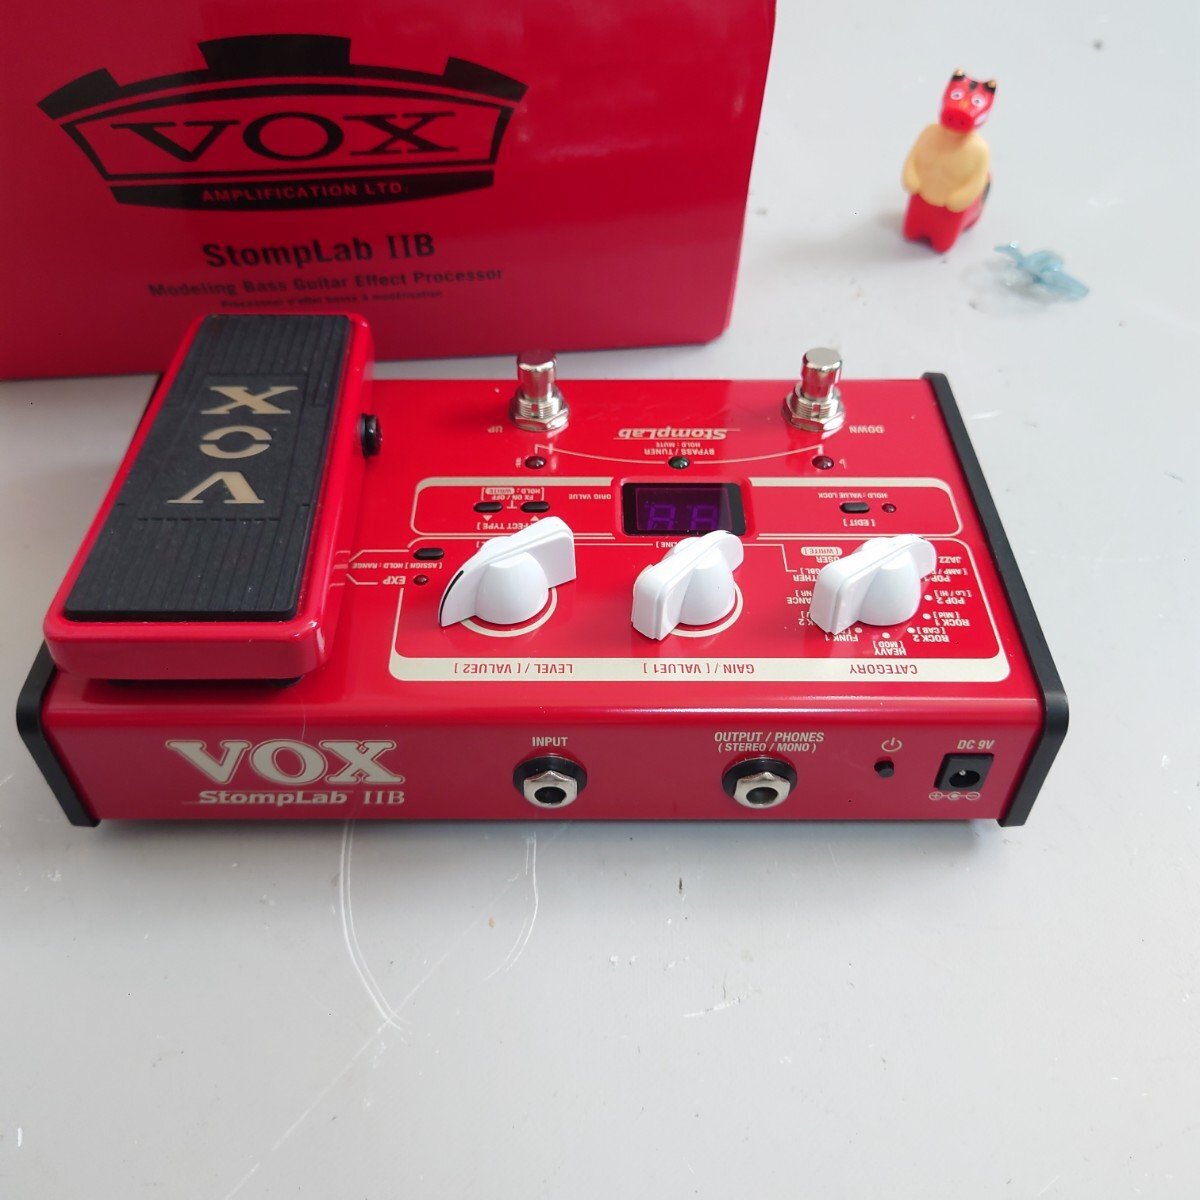 vox stomplab 2b IIB   база   мульти  эффектор   BOX идет в комплекте   товар в хорошем состоянии   доставка бесплатно  ☆